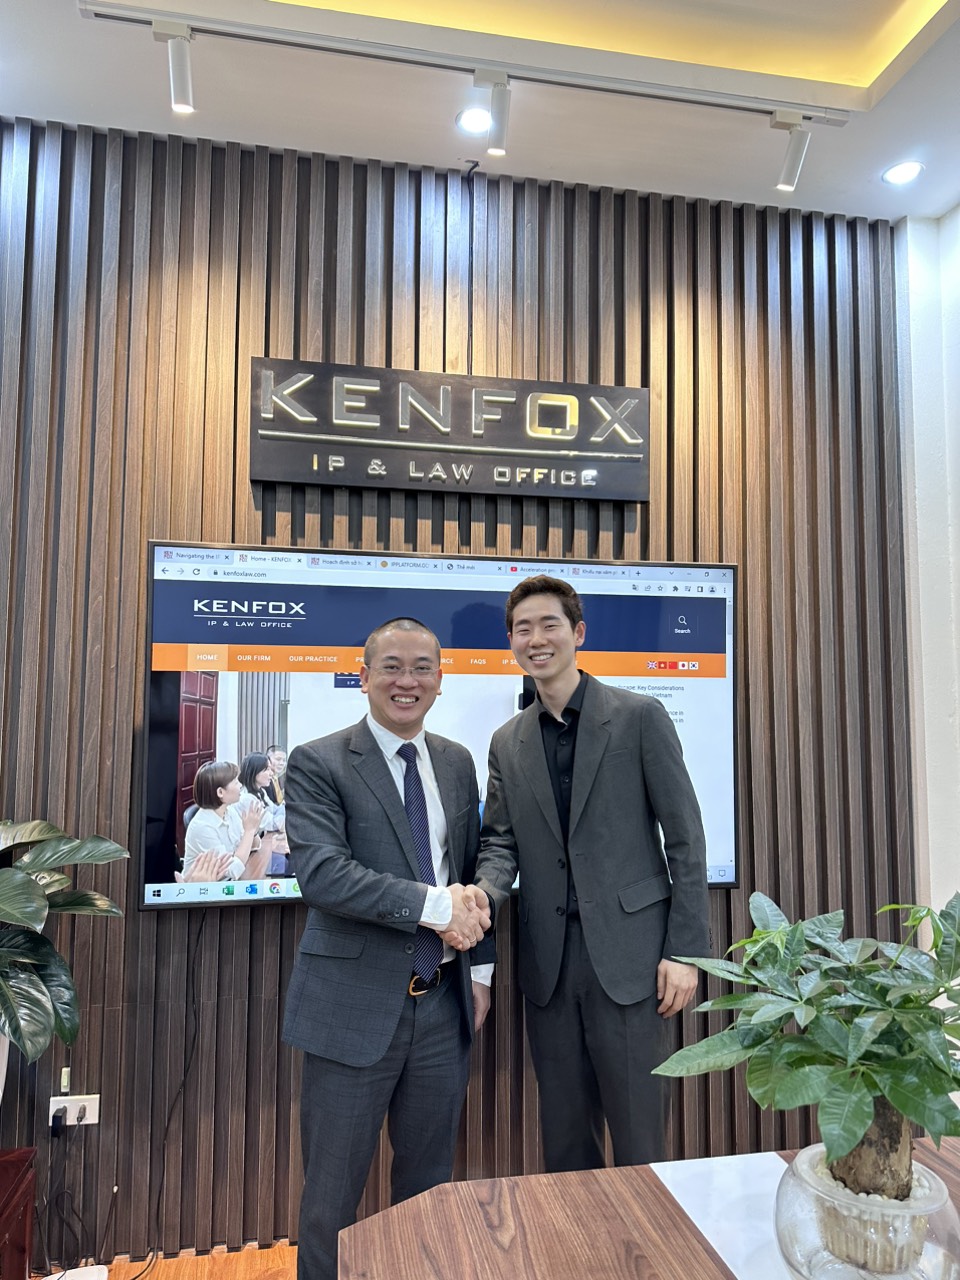 Công ty Hàn Quốc đã nhận ra tầm quan trọng của việc bảo vệ quyền SHTT của họ tại Việt Nam và tiềm năng phát triển trong thị trường mỹ phẩm. Trong chuyến thăm, đội ngũ của KENFOX đã cung cấp cho đại diện công ty Hàn Quốc bức tranh tổng quan về các yêu cầu pháp lý đối với việc đăng ký mỹ phẩm tại Việt Nam và các bước liên quan đến quy trình đăng ký mỹ phẩm.